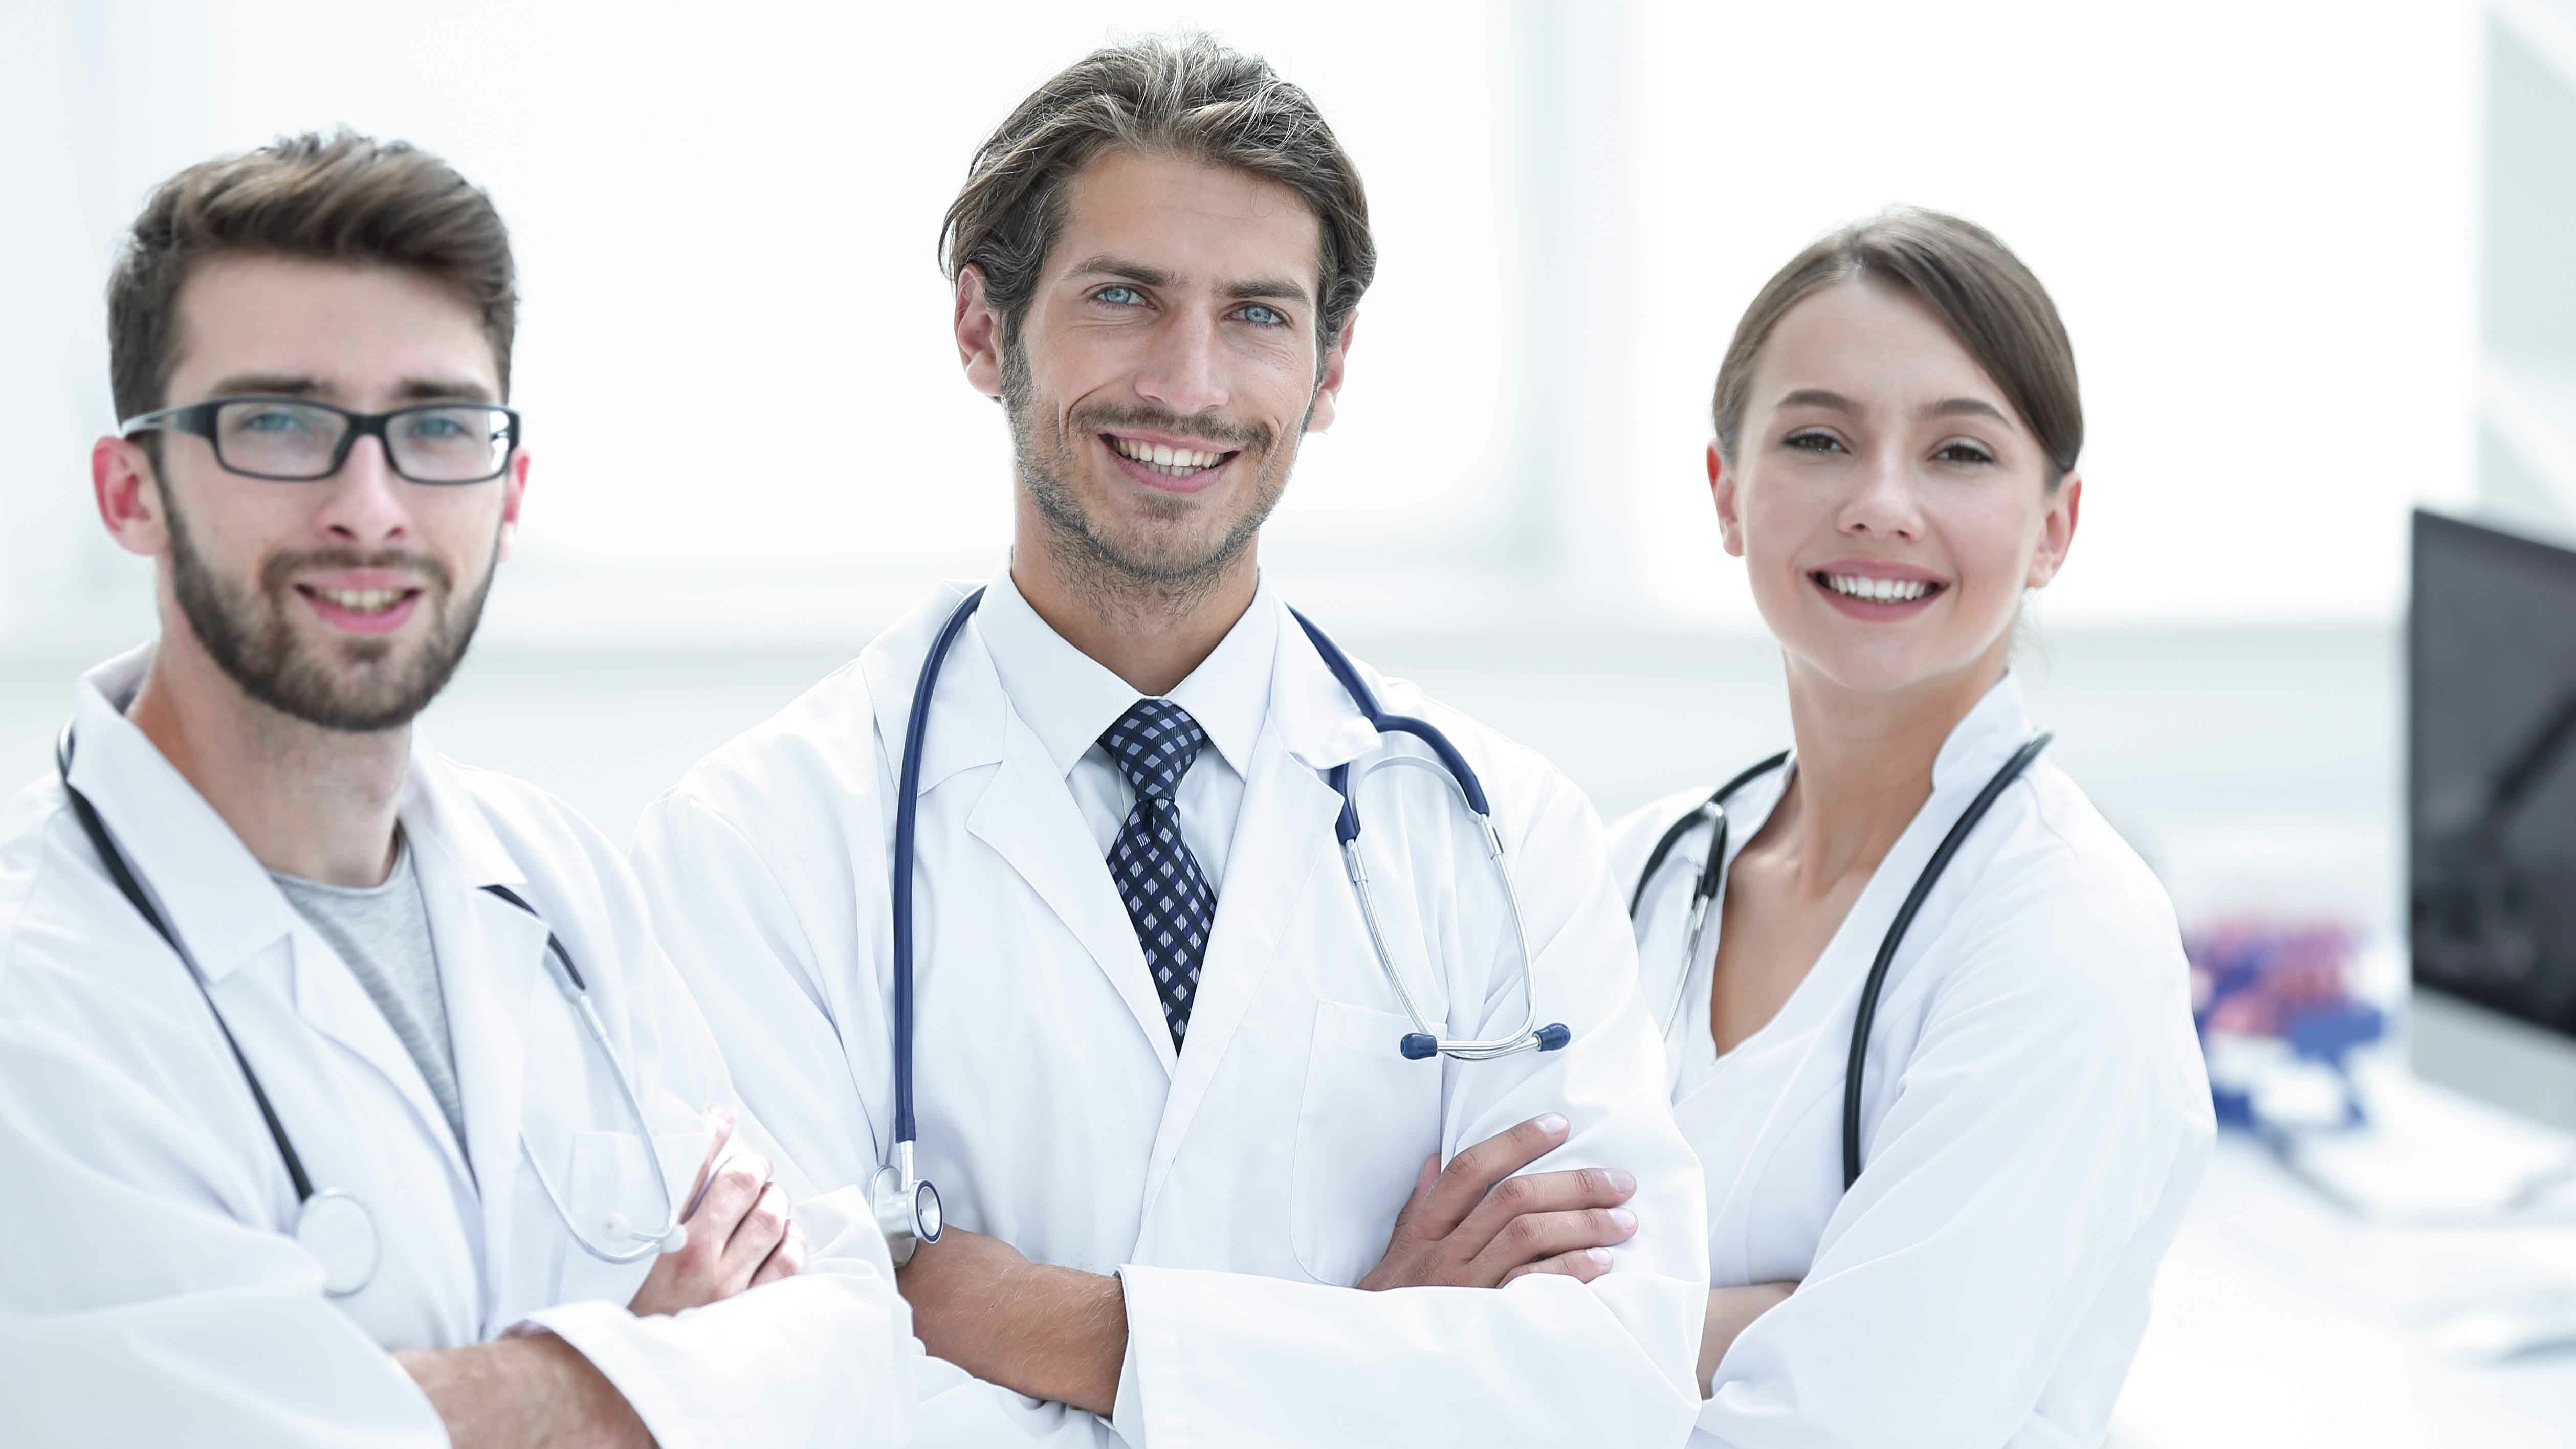 Drei freundliche Ärztinnen und Ärzte mit weißen Kitteln und Stethoskop